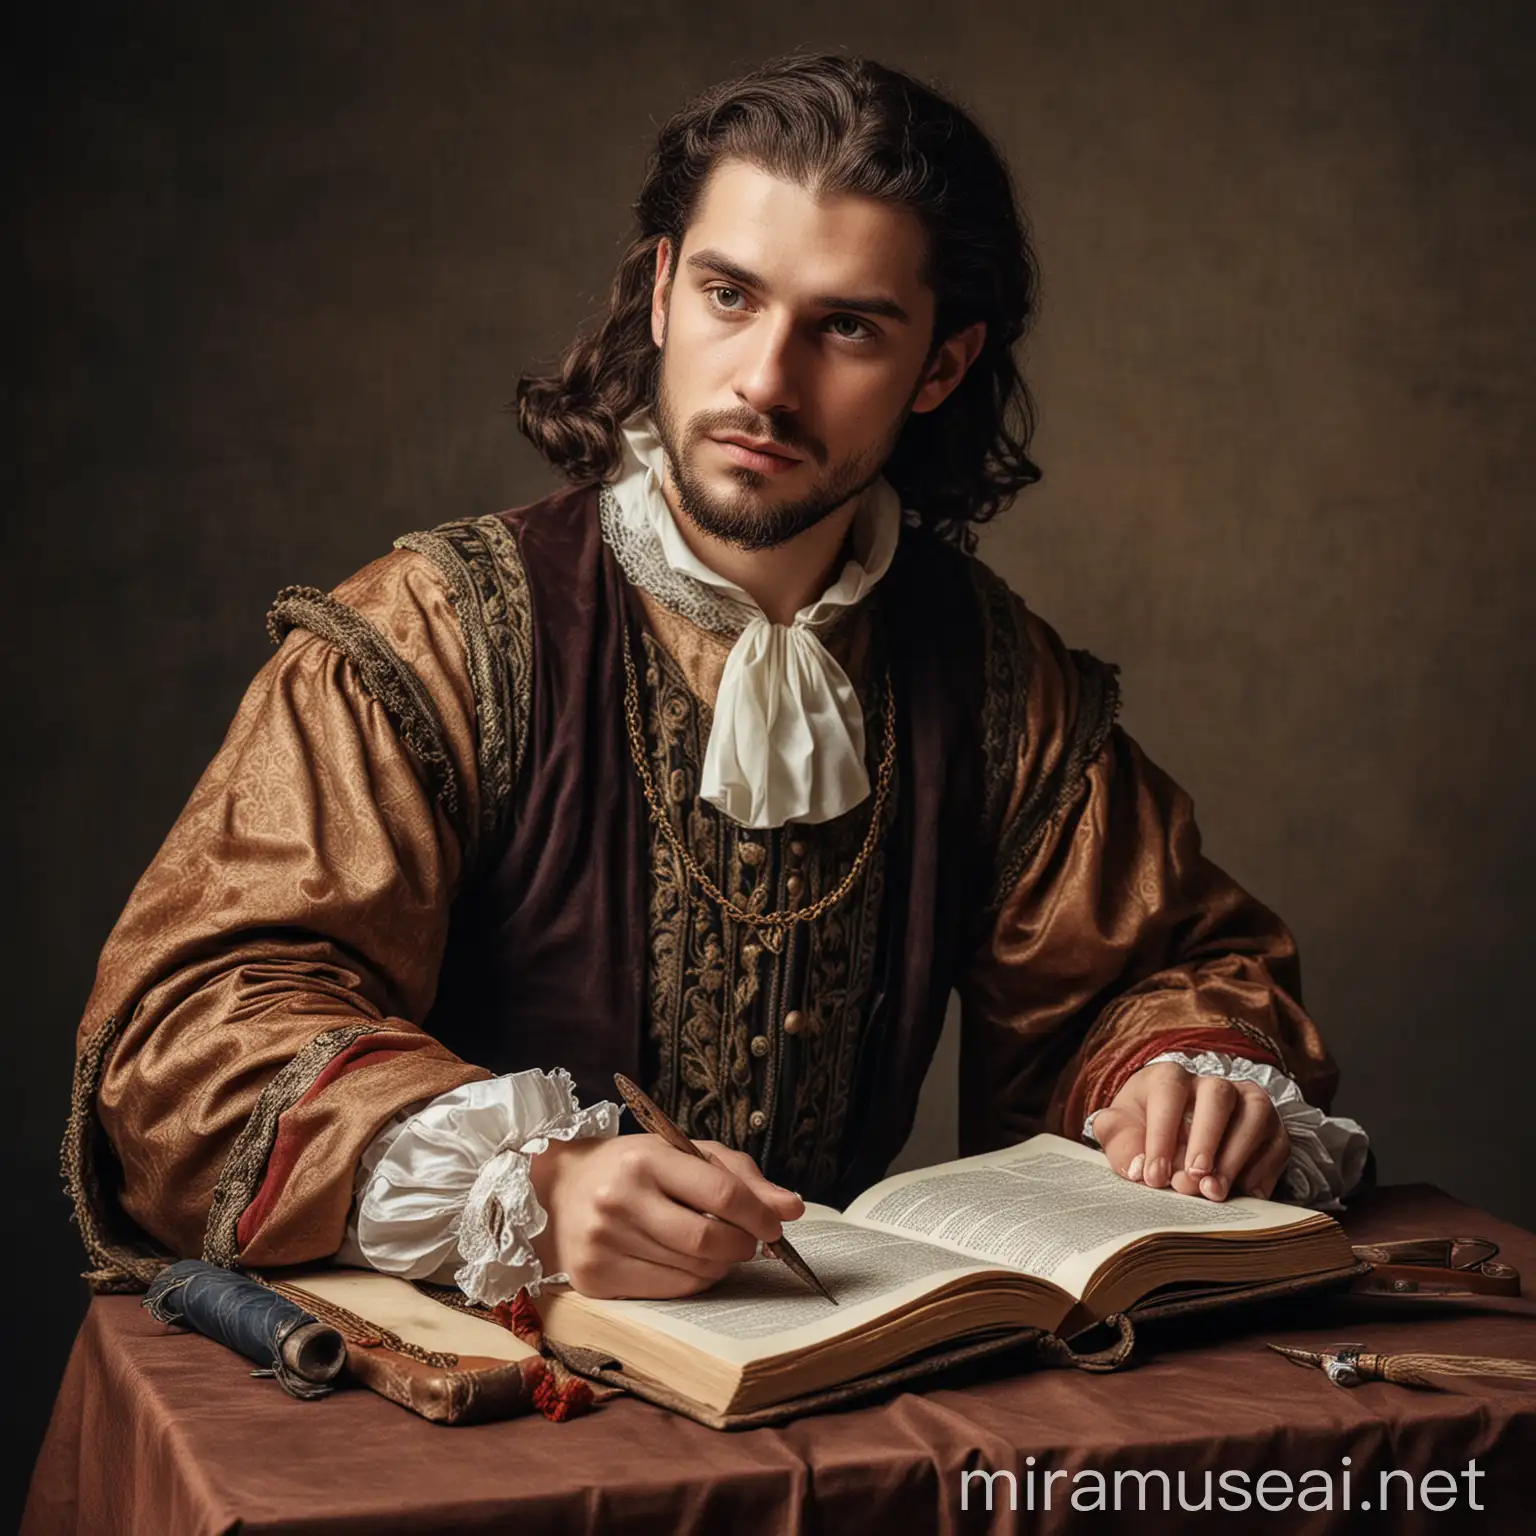 Богато одетый средневековый мужчина, с книжкой и пером